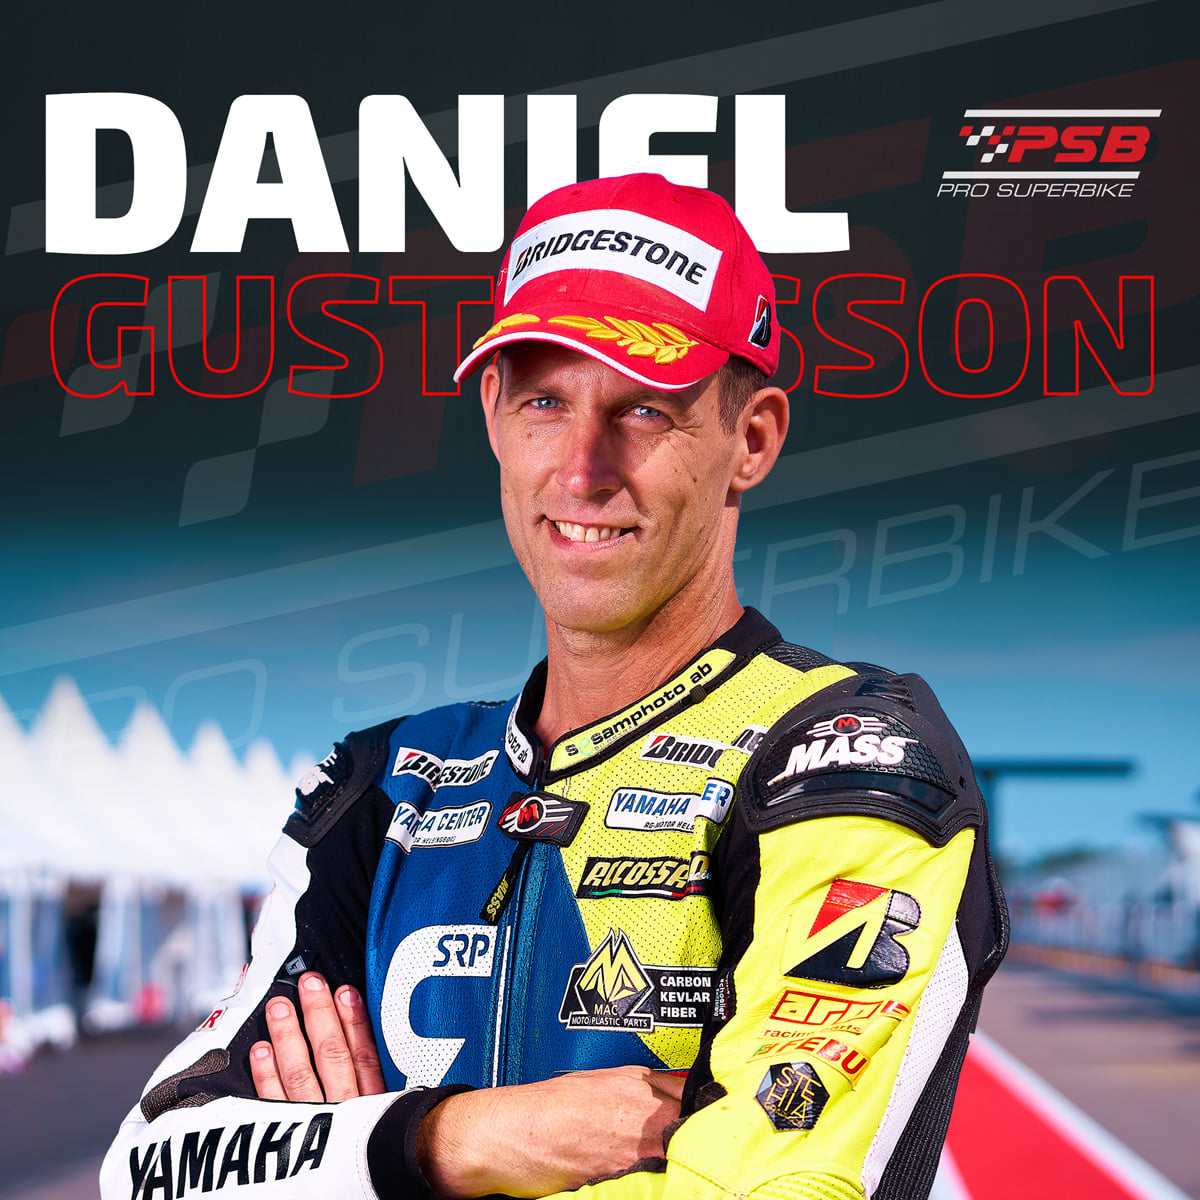 Daniel Gustafsson